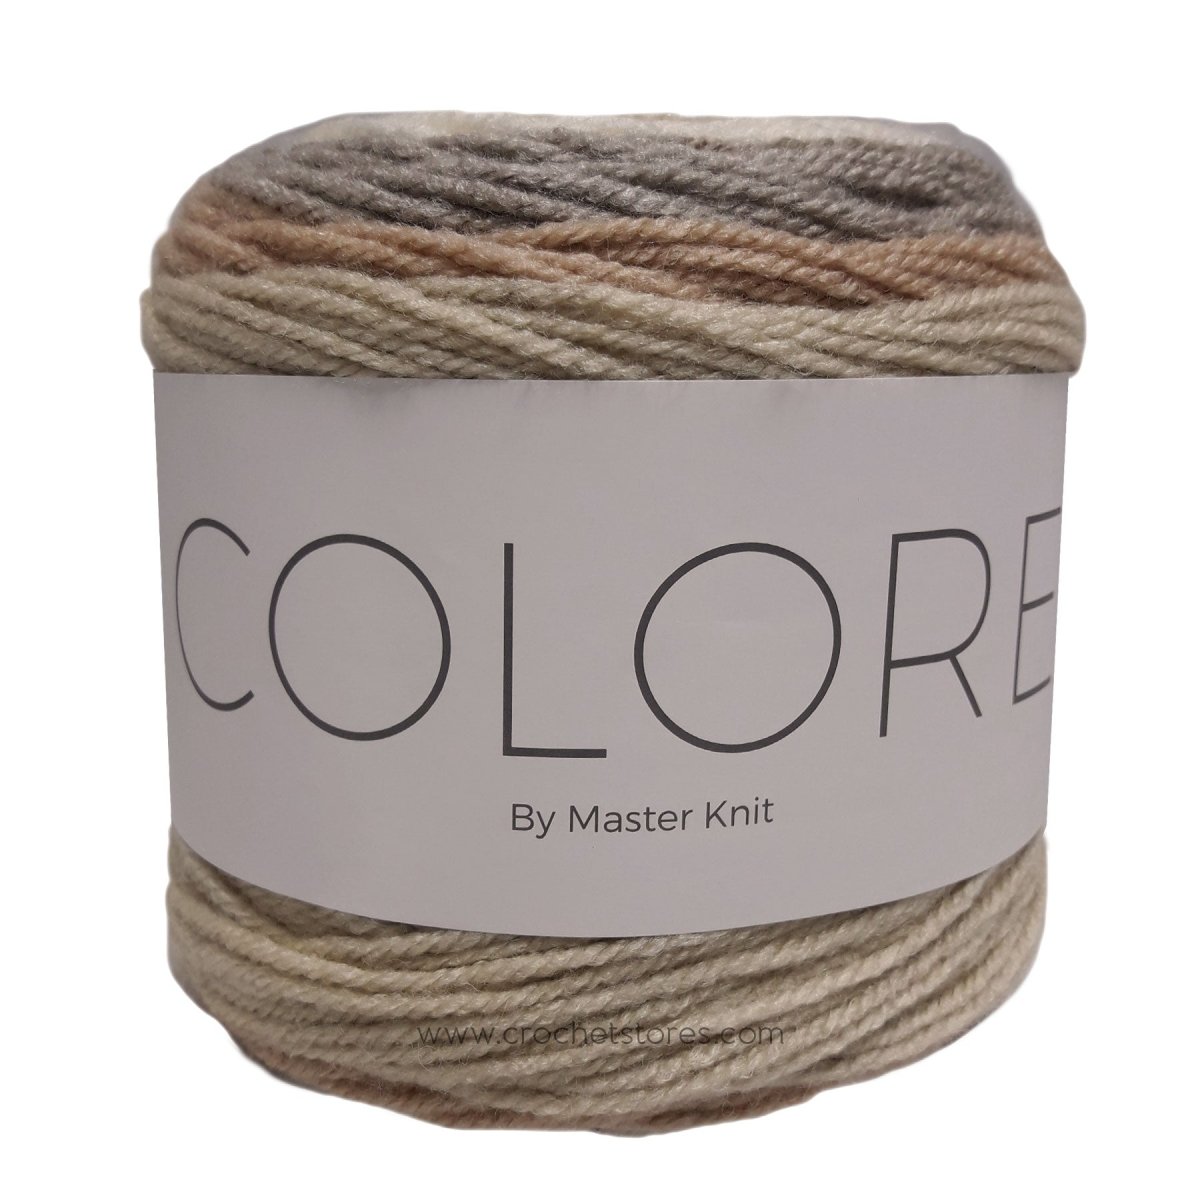 COLORE - Crochetstores9400-388